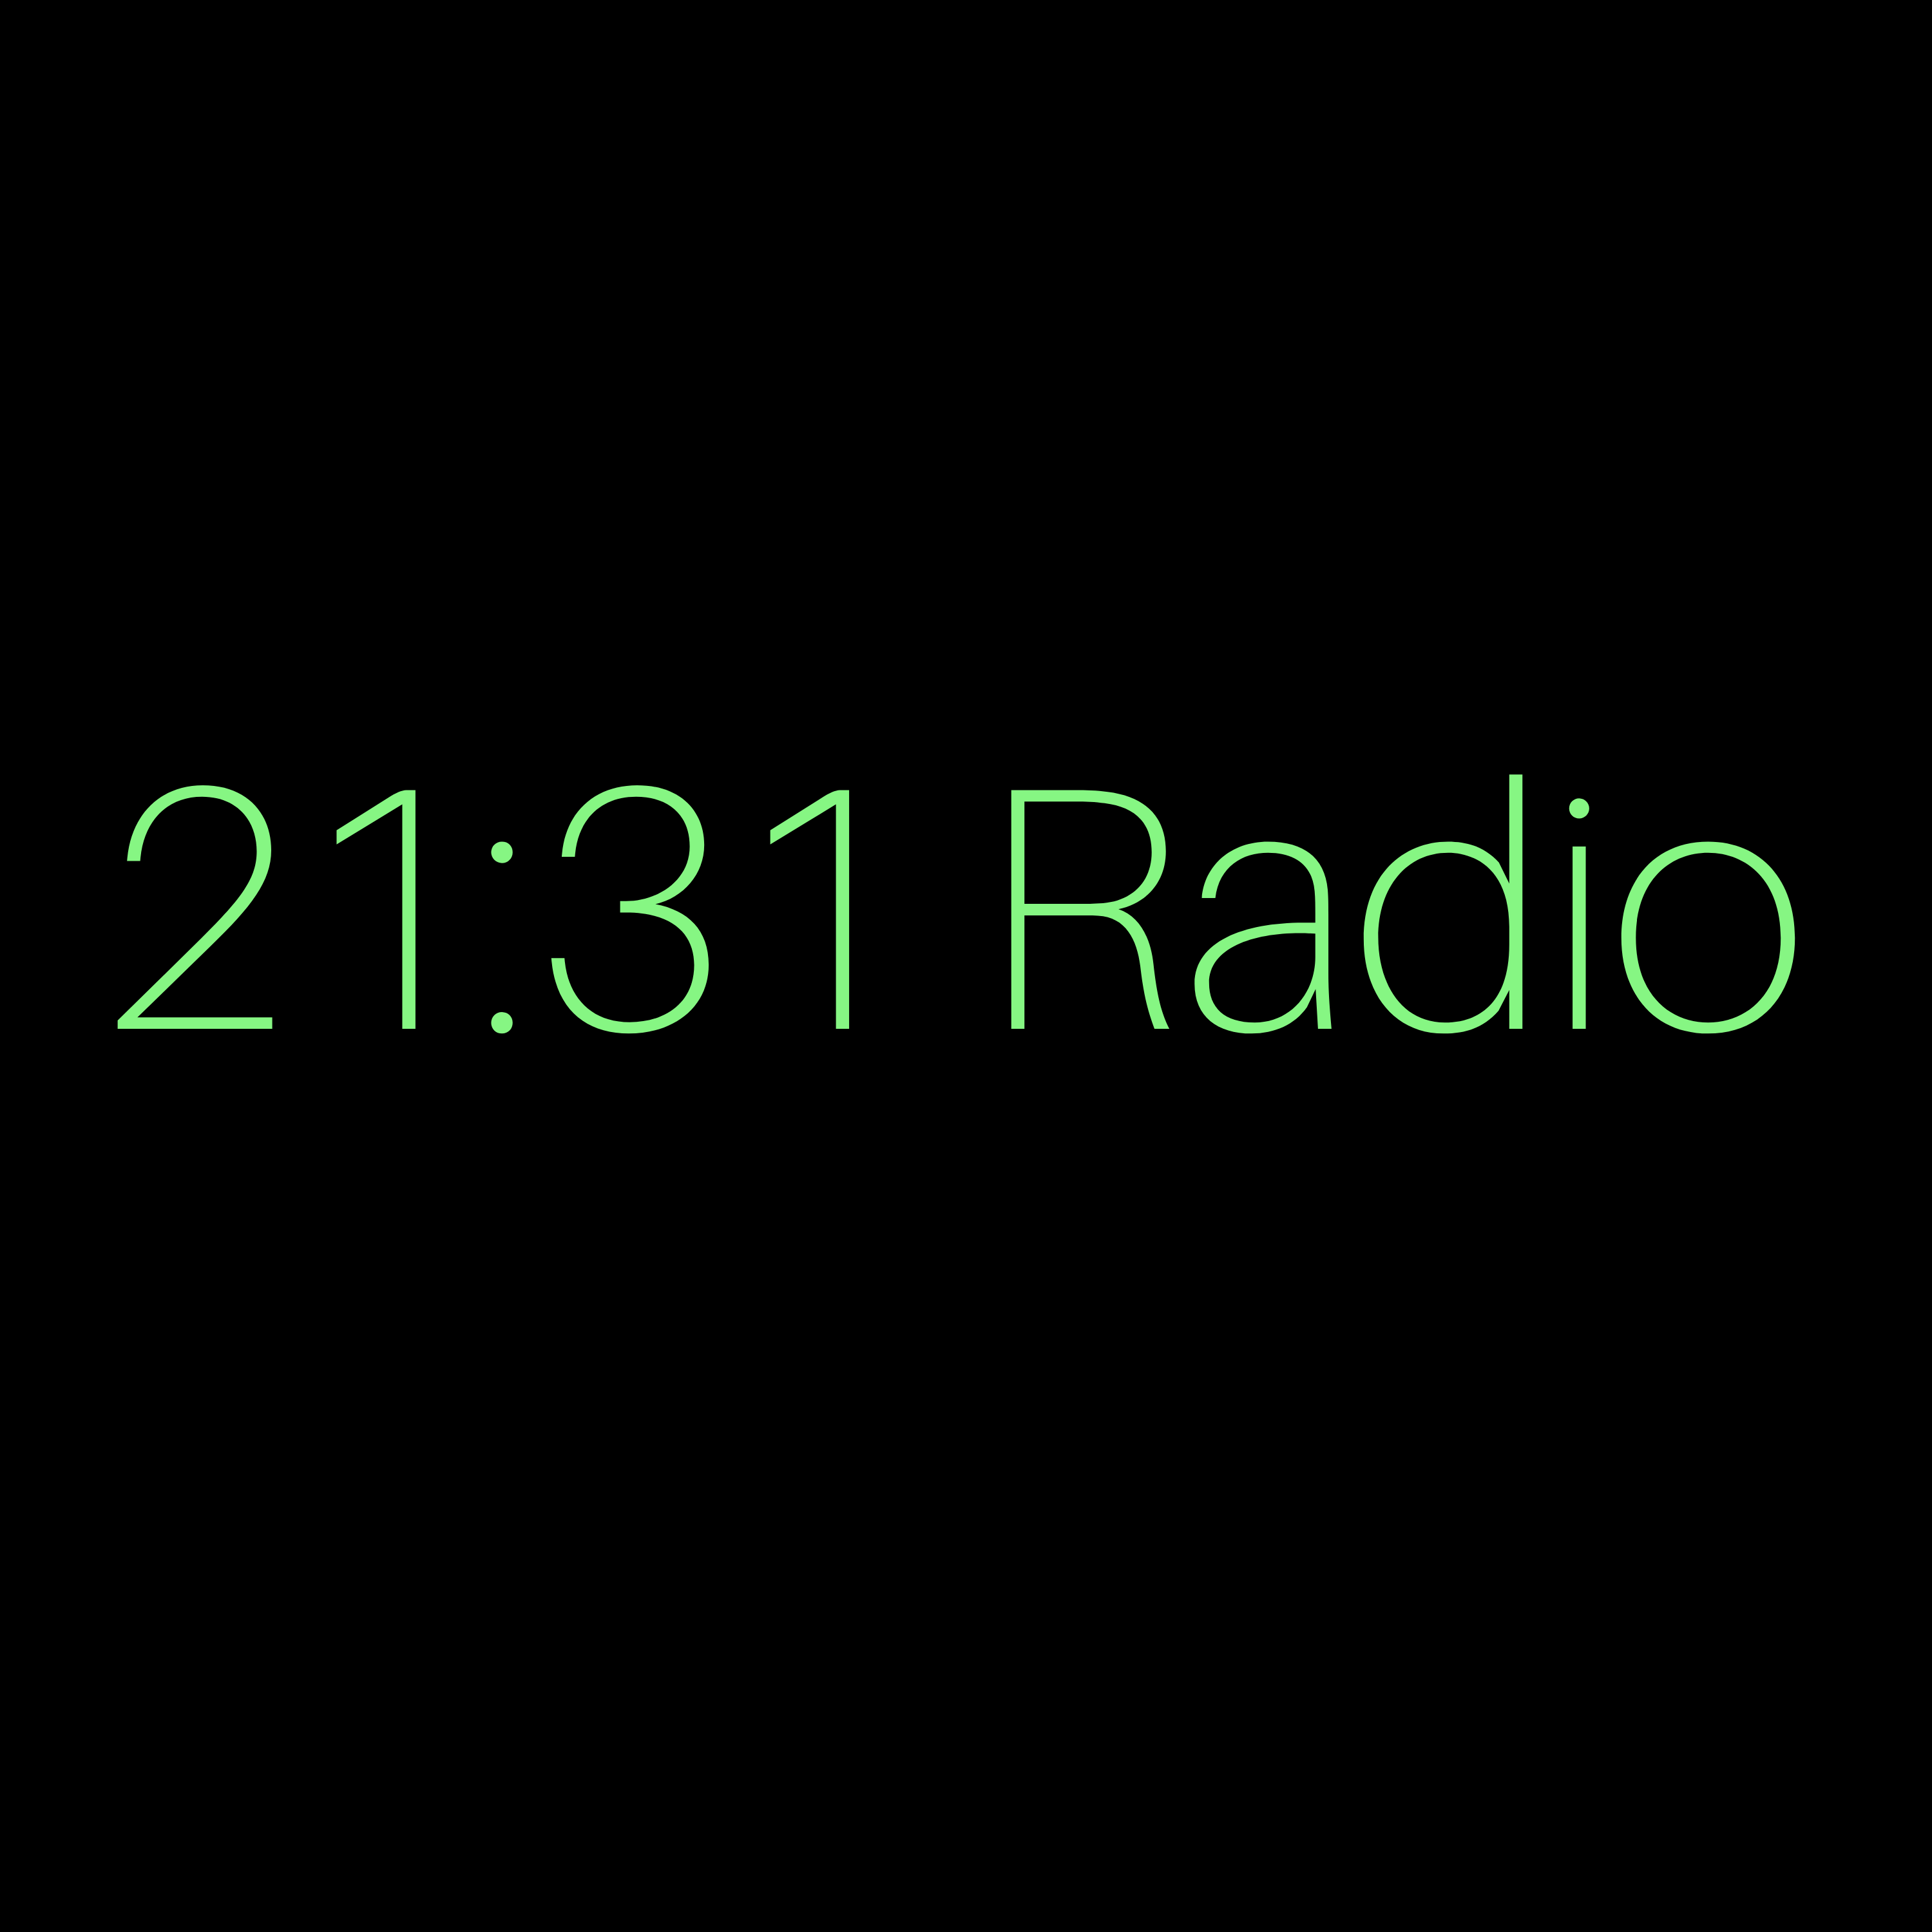 21:31 Radio